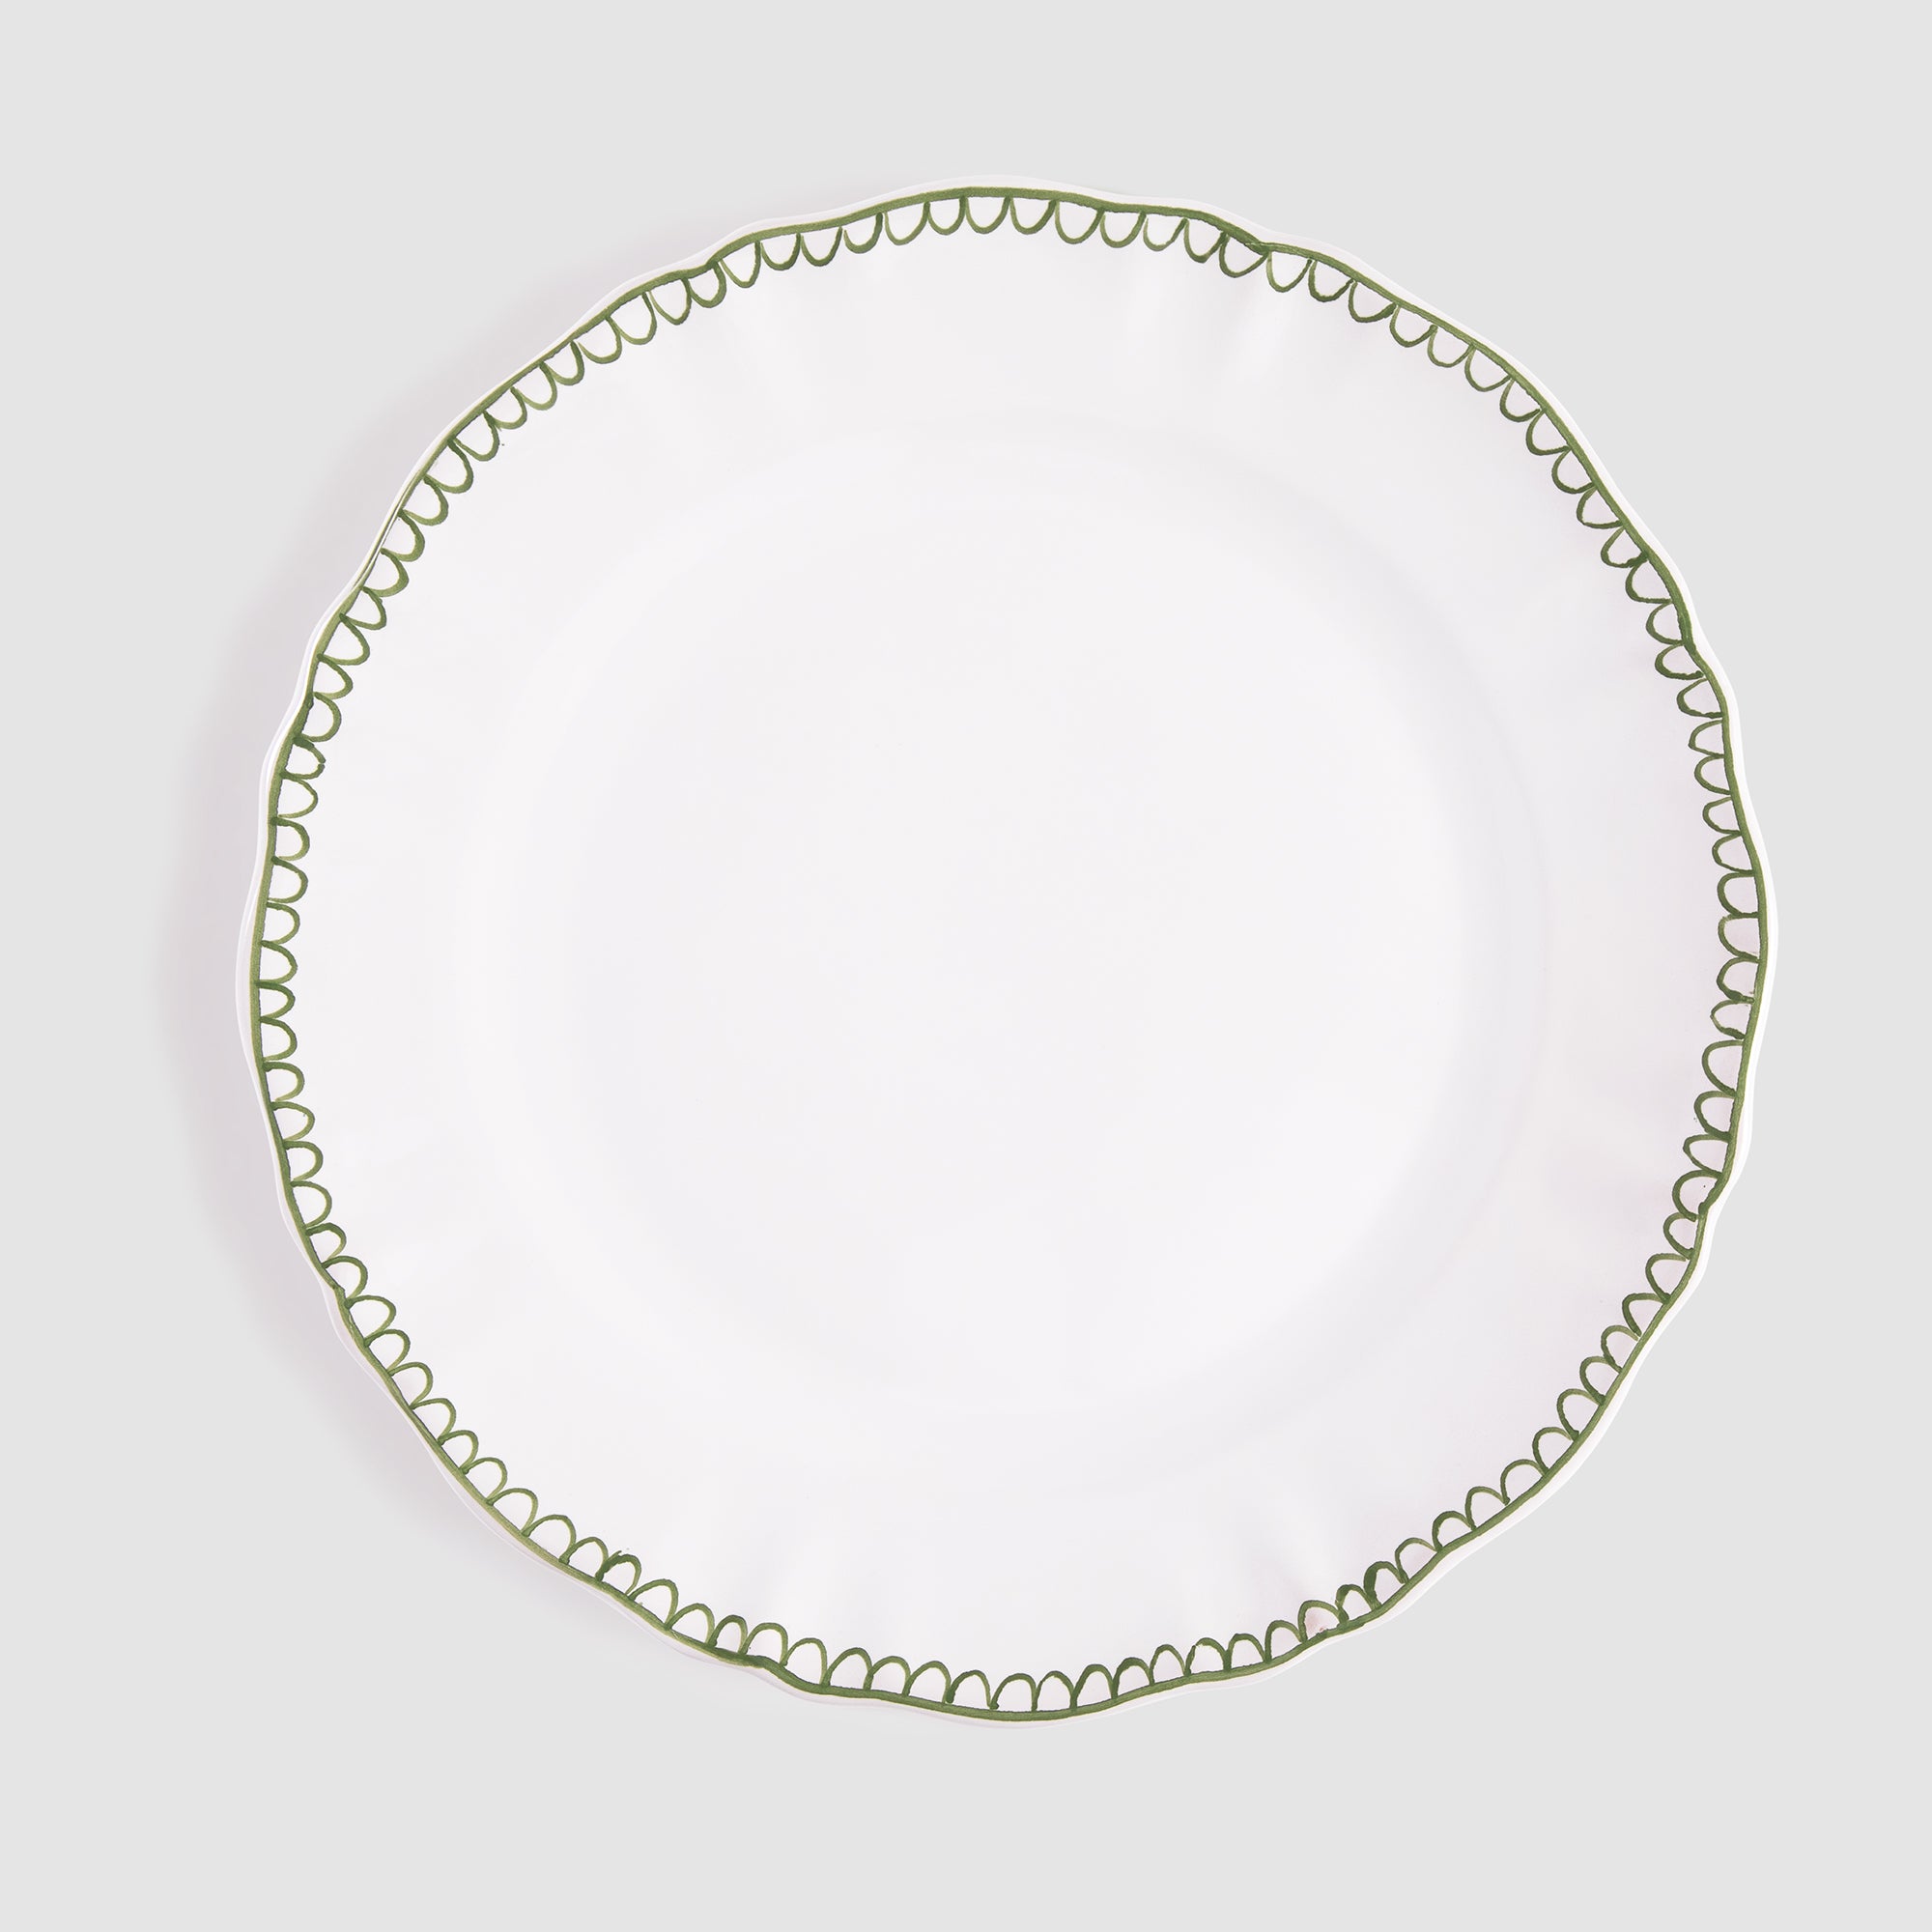 Bouclette Dinner Plate, Green